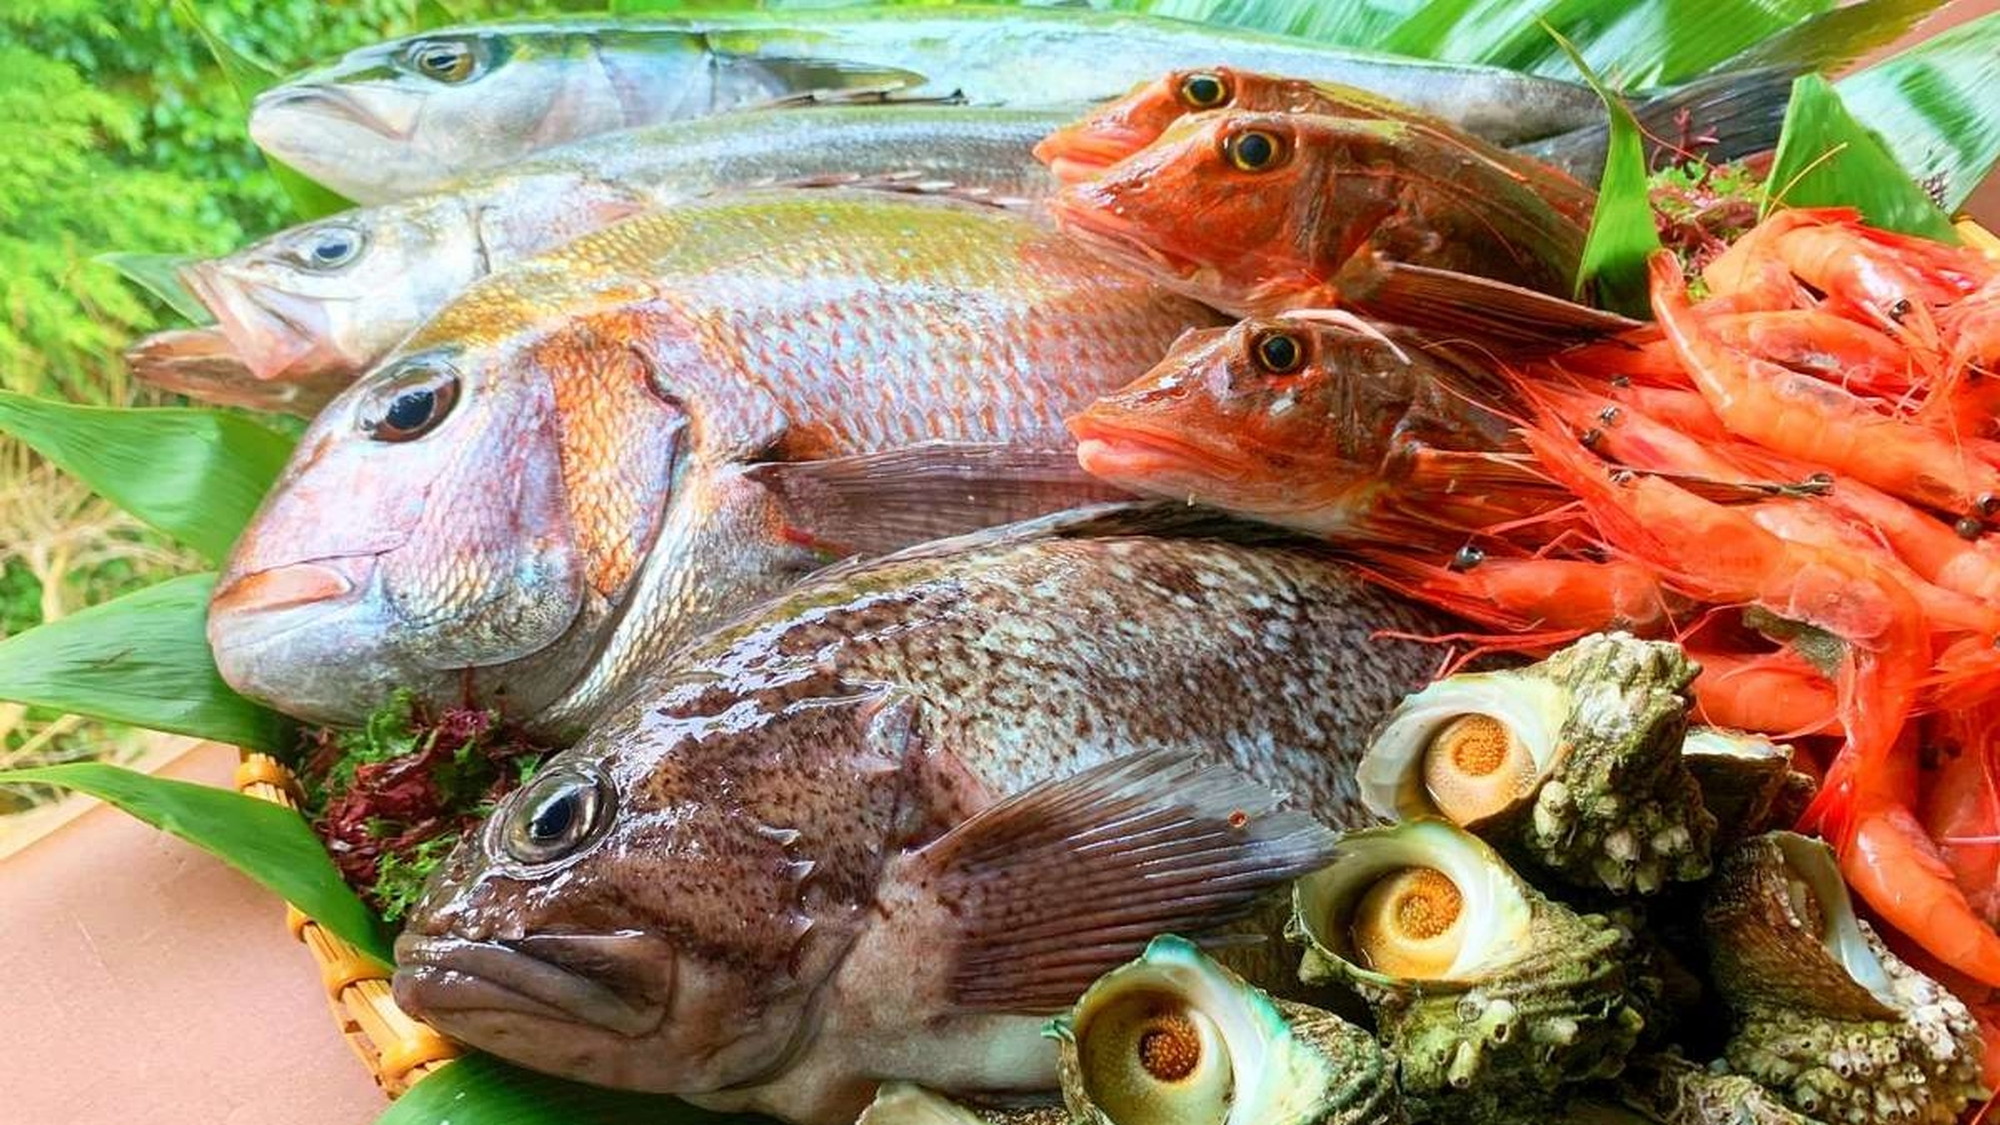 庄内で水揚げされた新鮮な魚をふんだんに使用した和会席膳がおすすめです